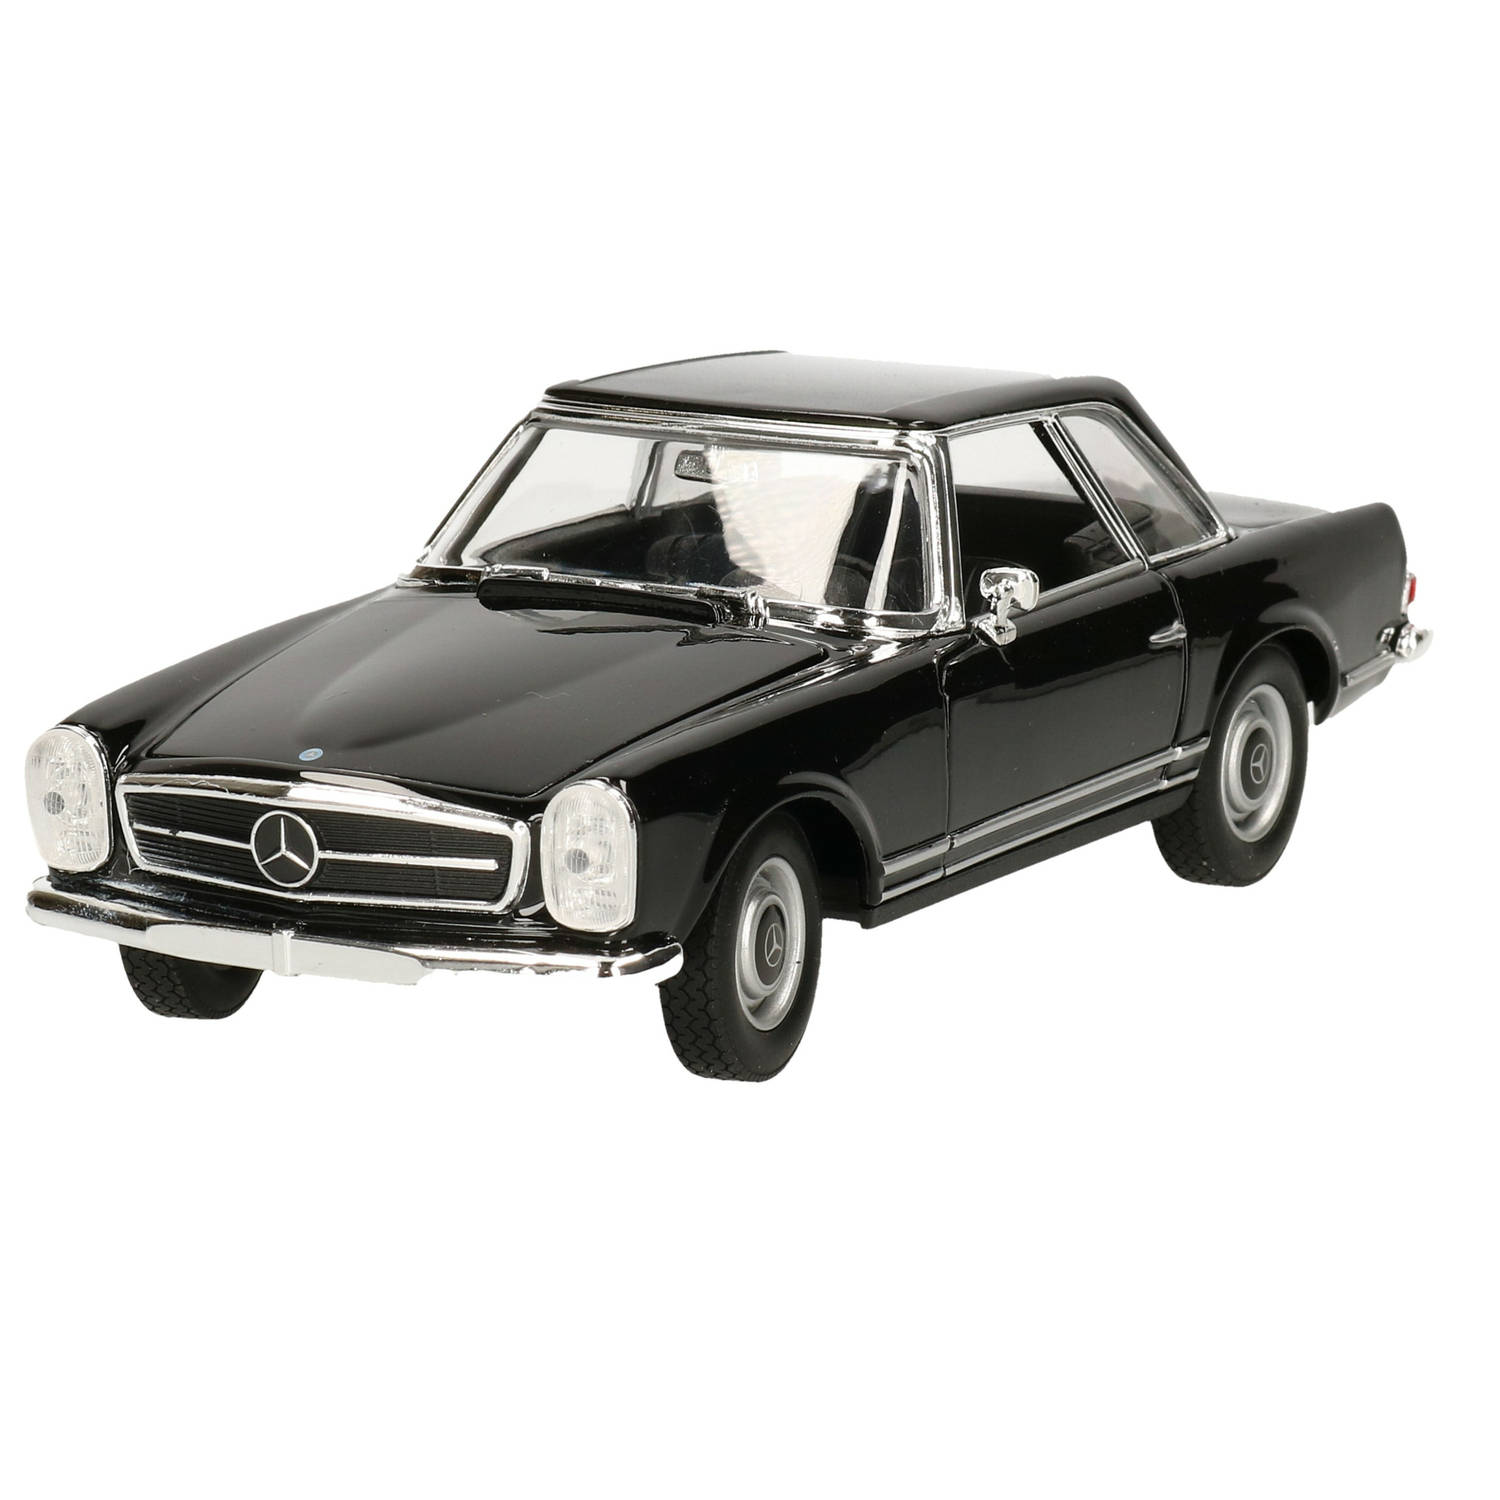 Modelauto-speelgoedauto Mercedes-benz 230sl 1963 Schaal 1:24-18 X 7 X 5 Cm Speelgoed Auto's